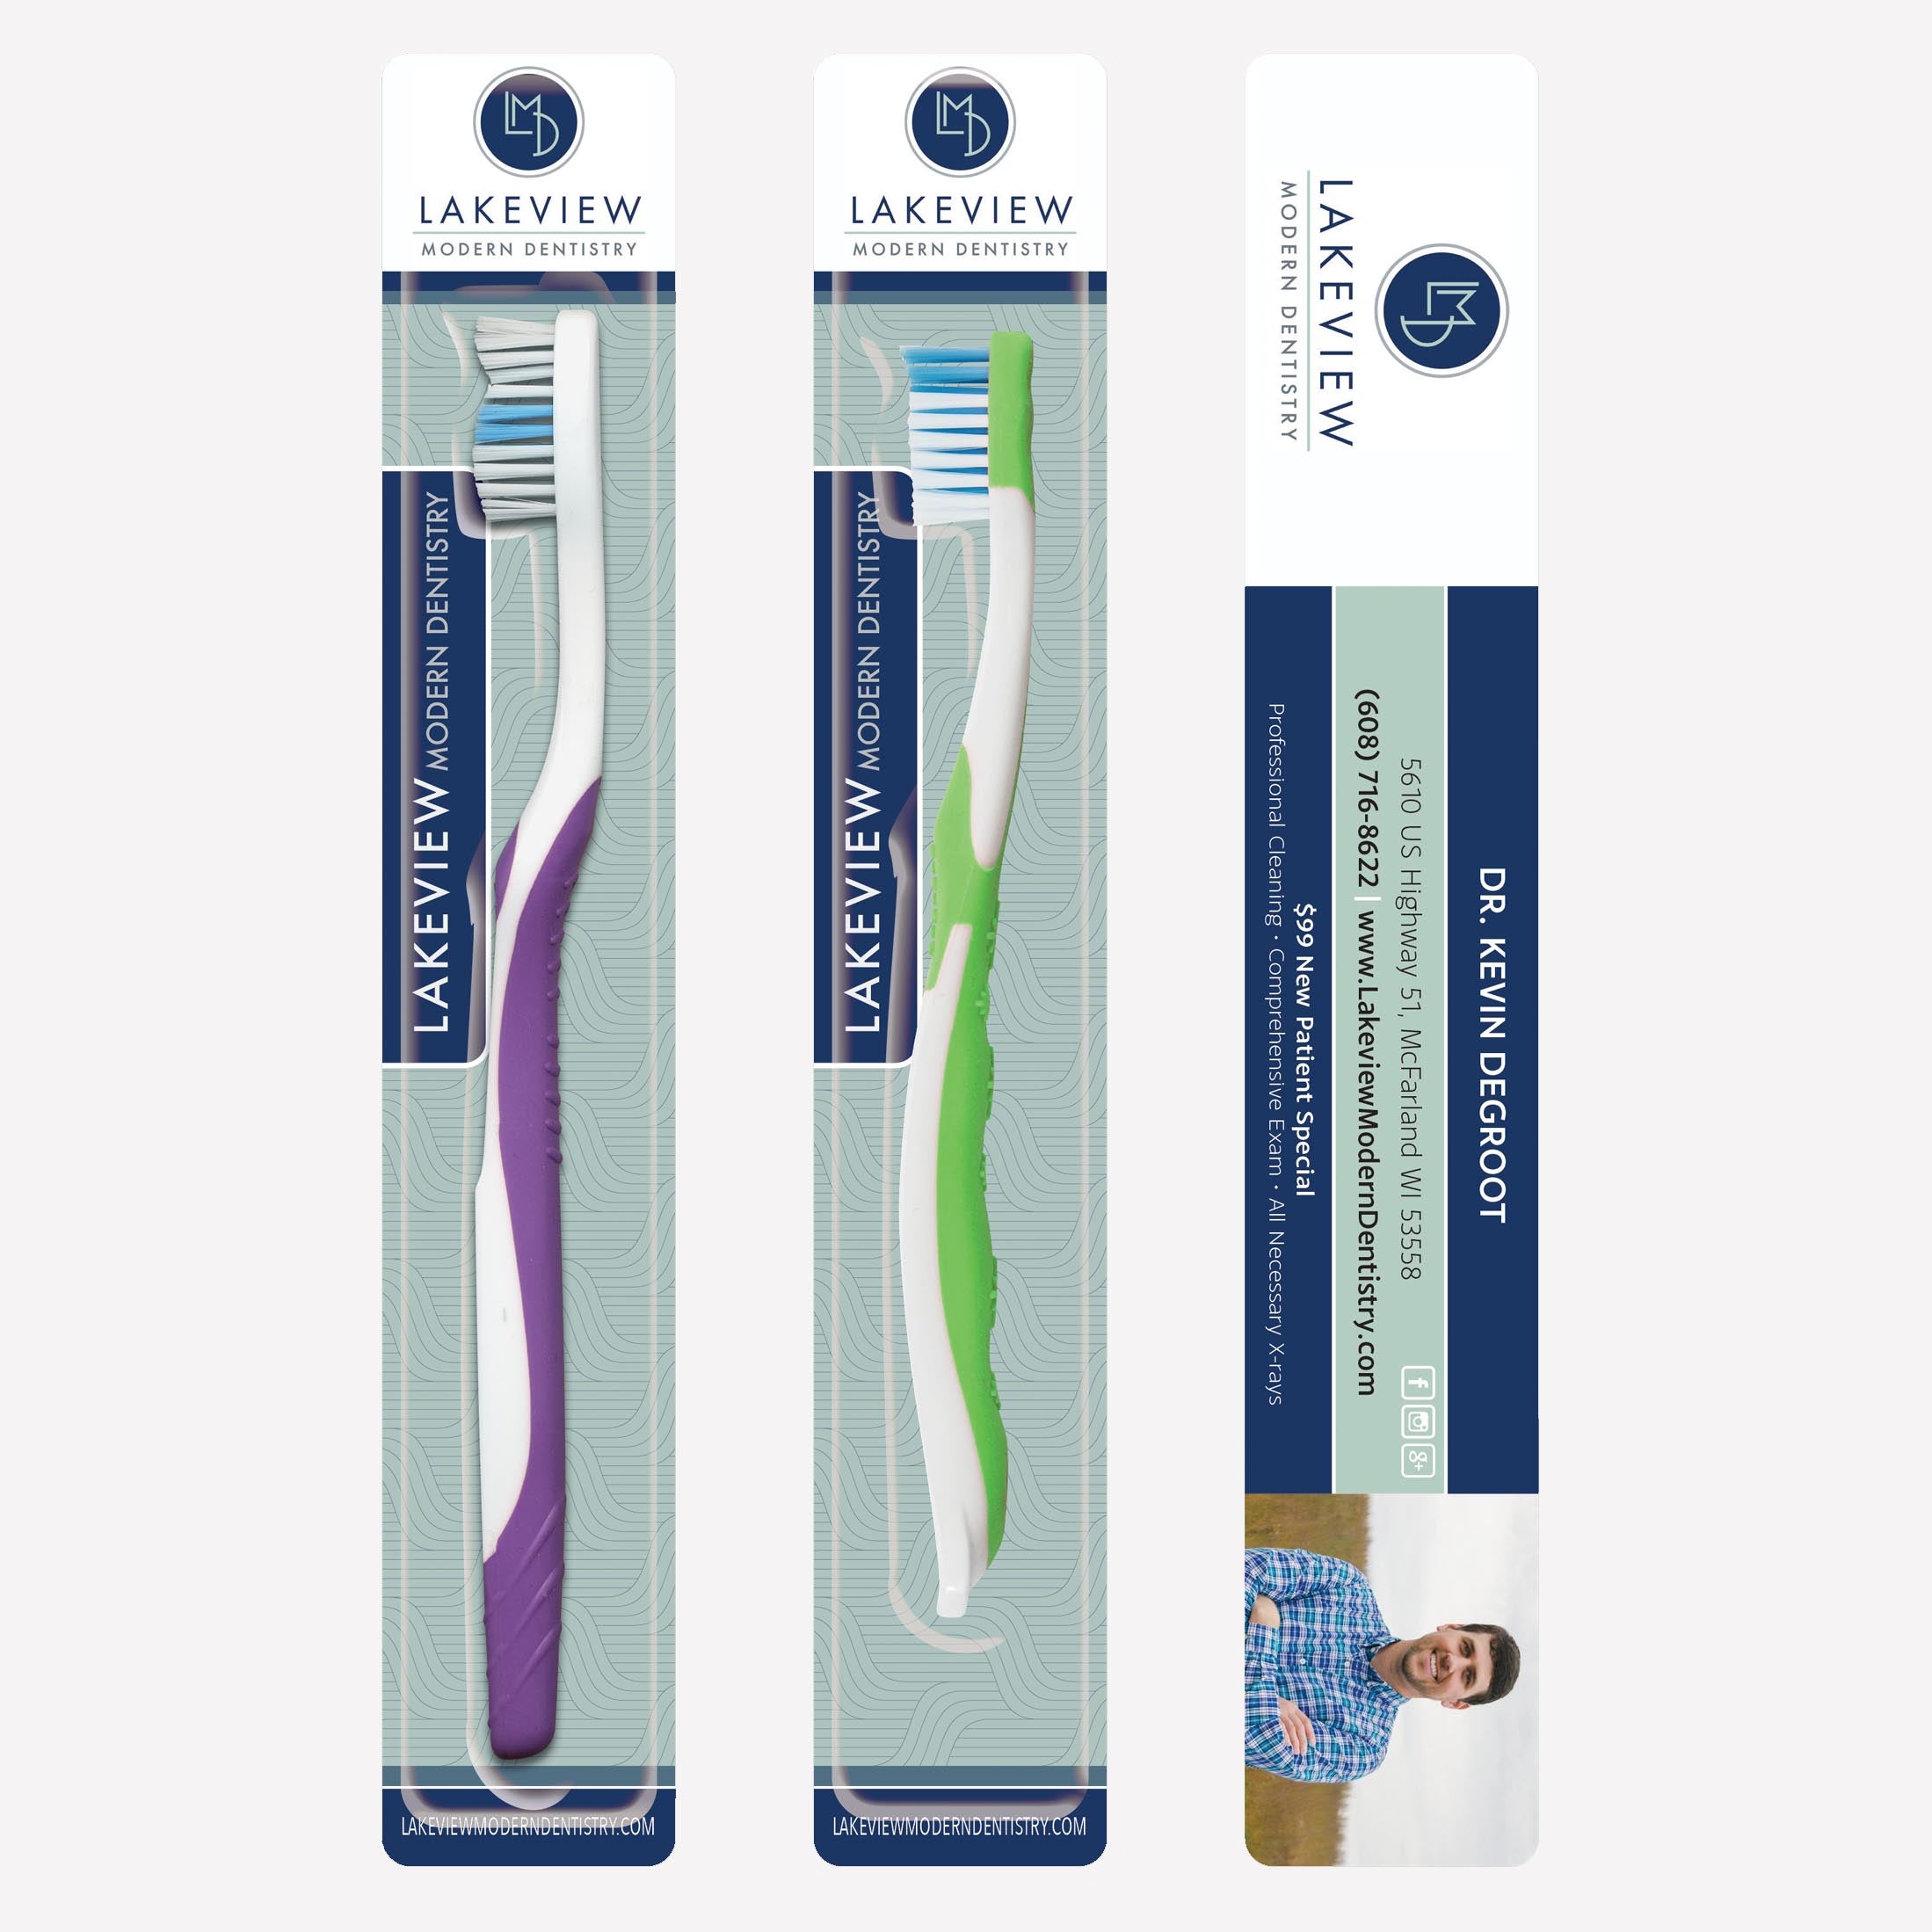 Total Package Custom Toothbrush Sample